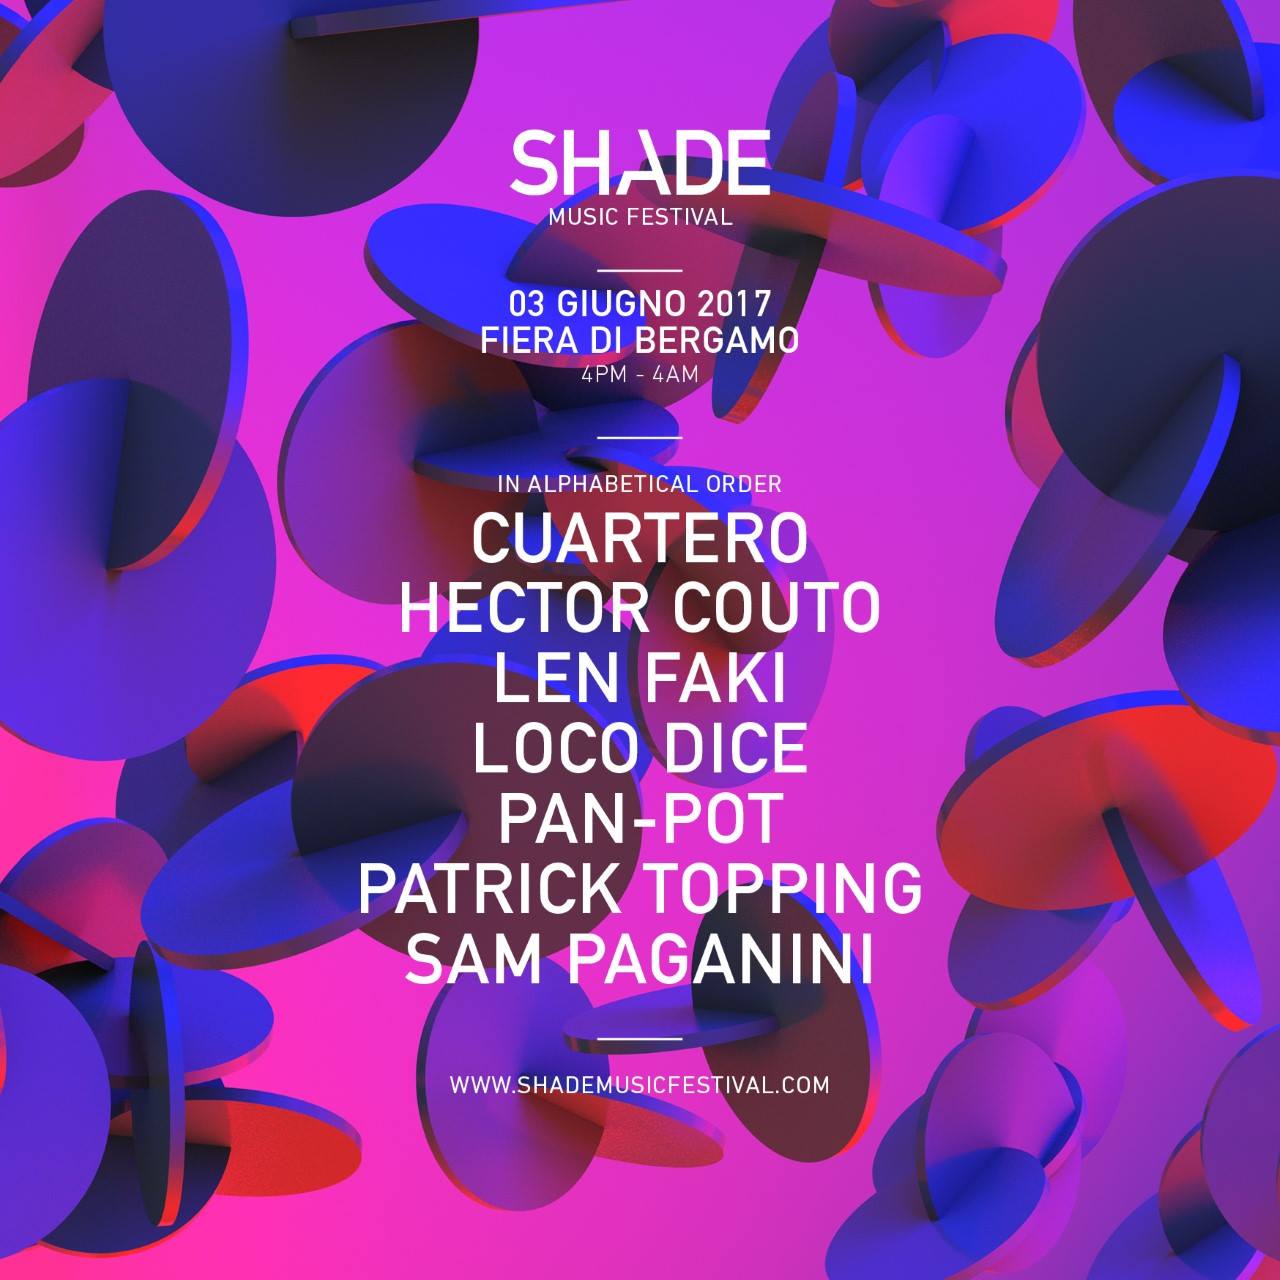 3 giugno: Shade Music Festival 2017 alla Fiera di Bergamo. Sul palco: Loco Dice, Len Faki, Pan-Pot, Patrick Topping...